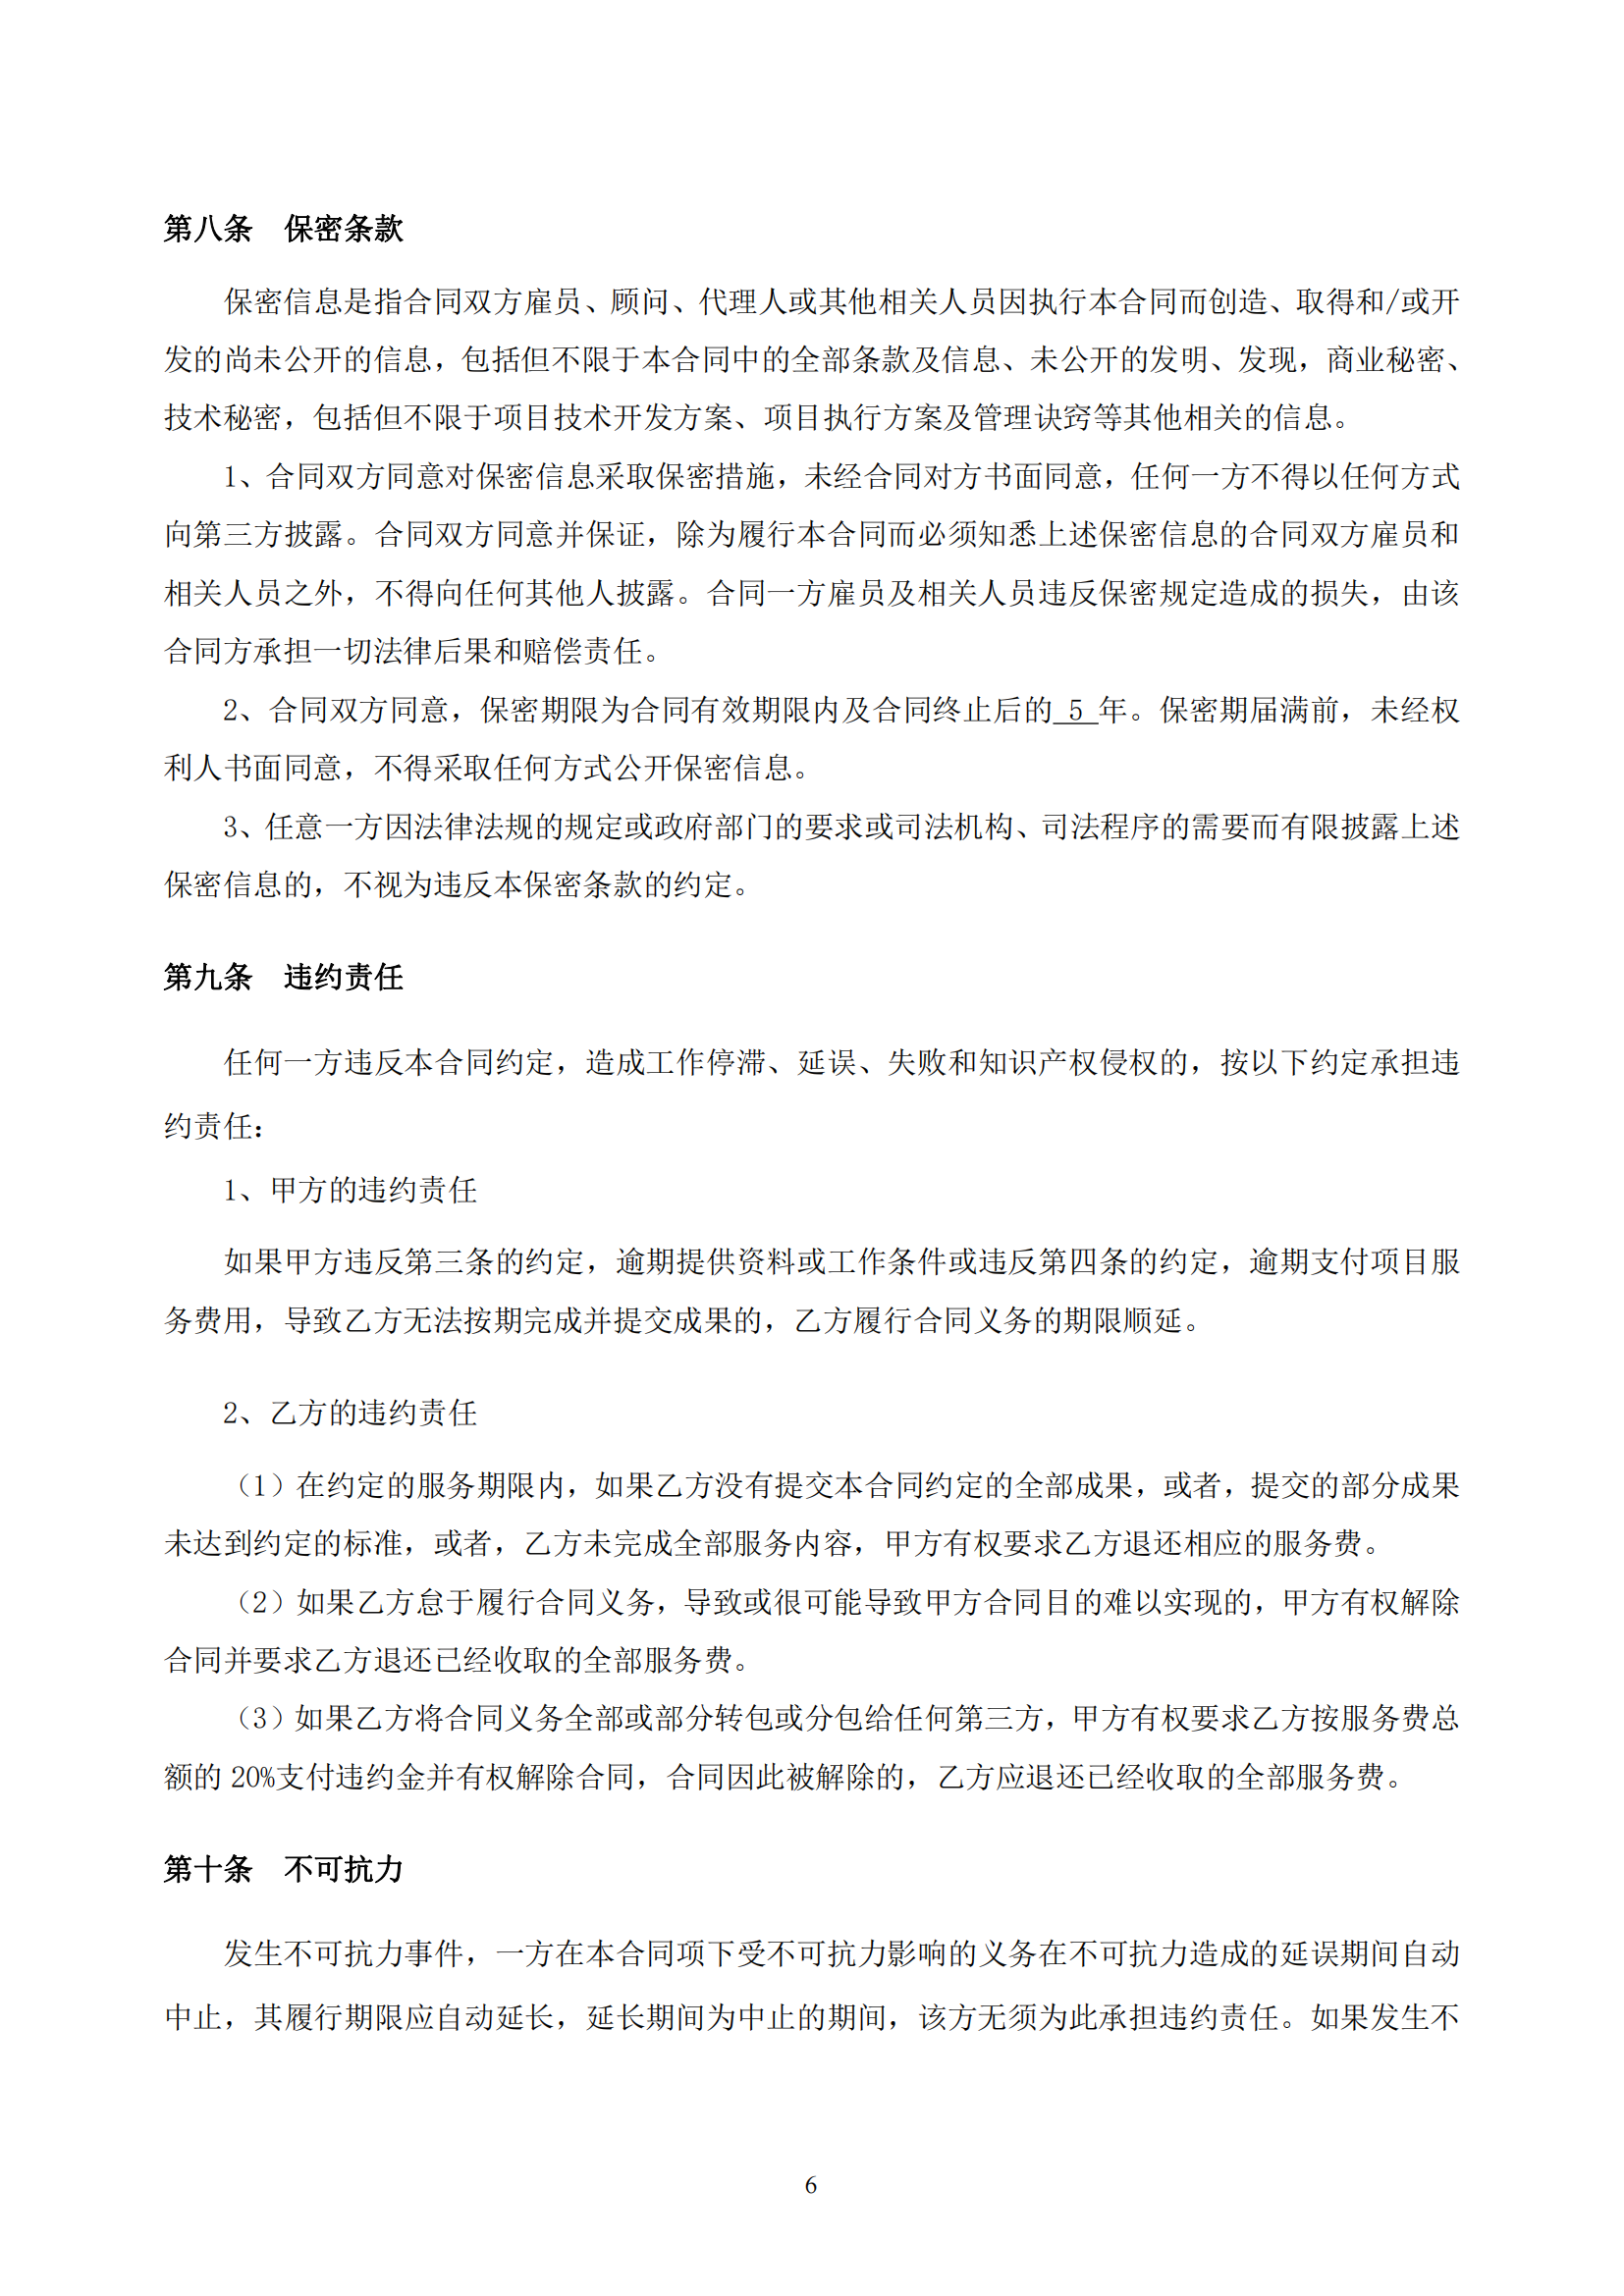 武汉妇联官方微信新媒体运维及改版升级项目合同_06.png